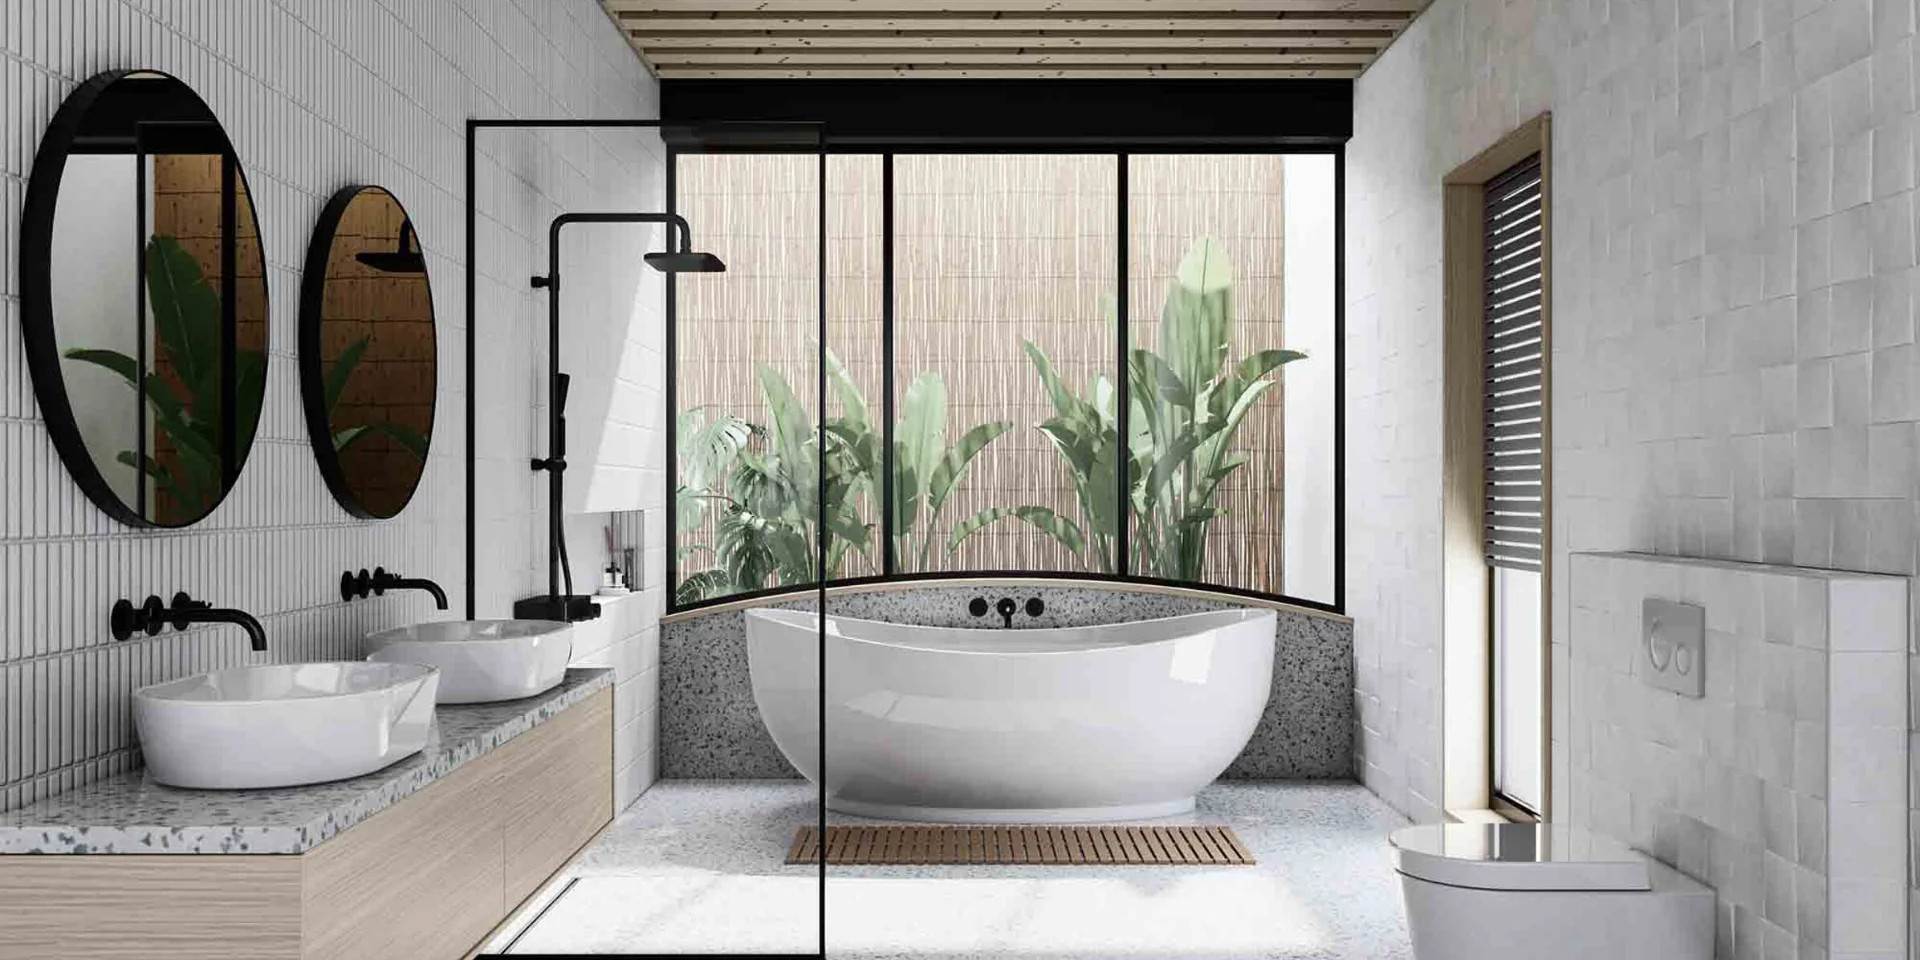 Esempio di rendering fotorealistico del bagno con toni naturali.